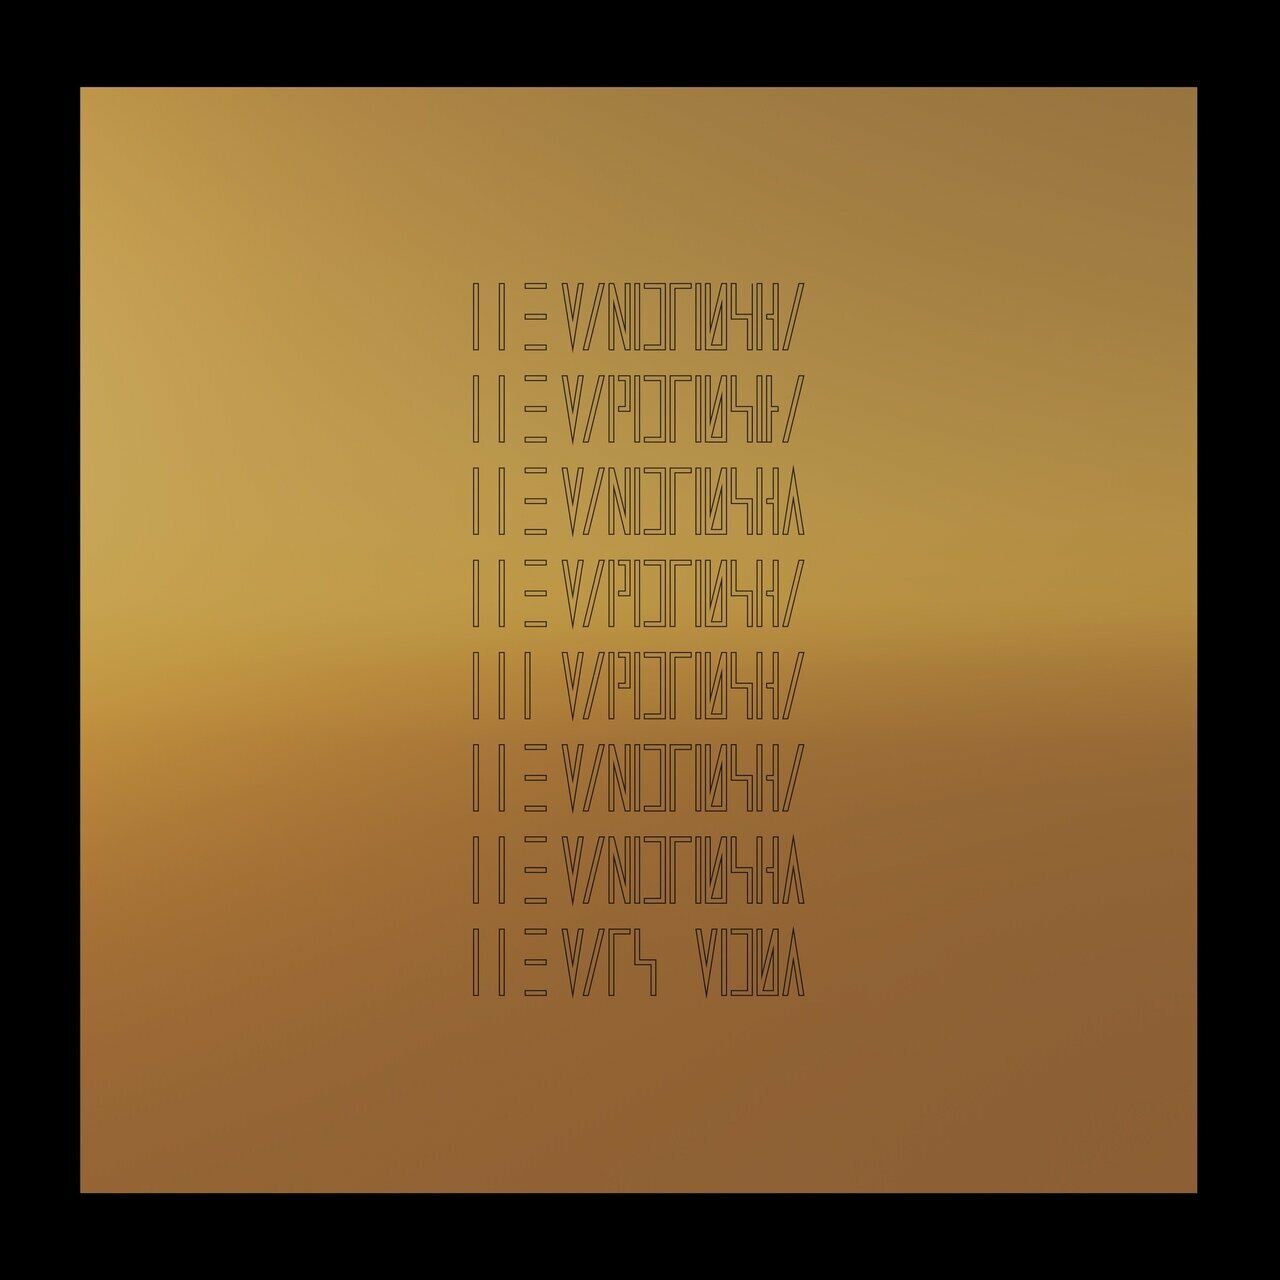 Виниловая пластинка Mars Volta, The, The Mars Volta (4250795605218) цена и фото